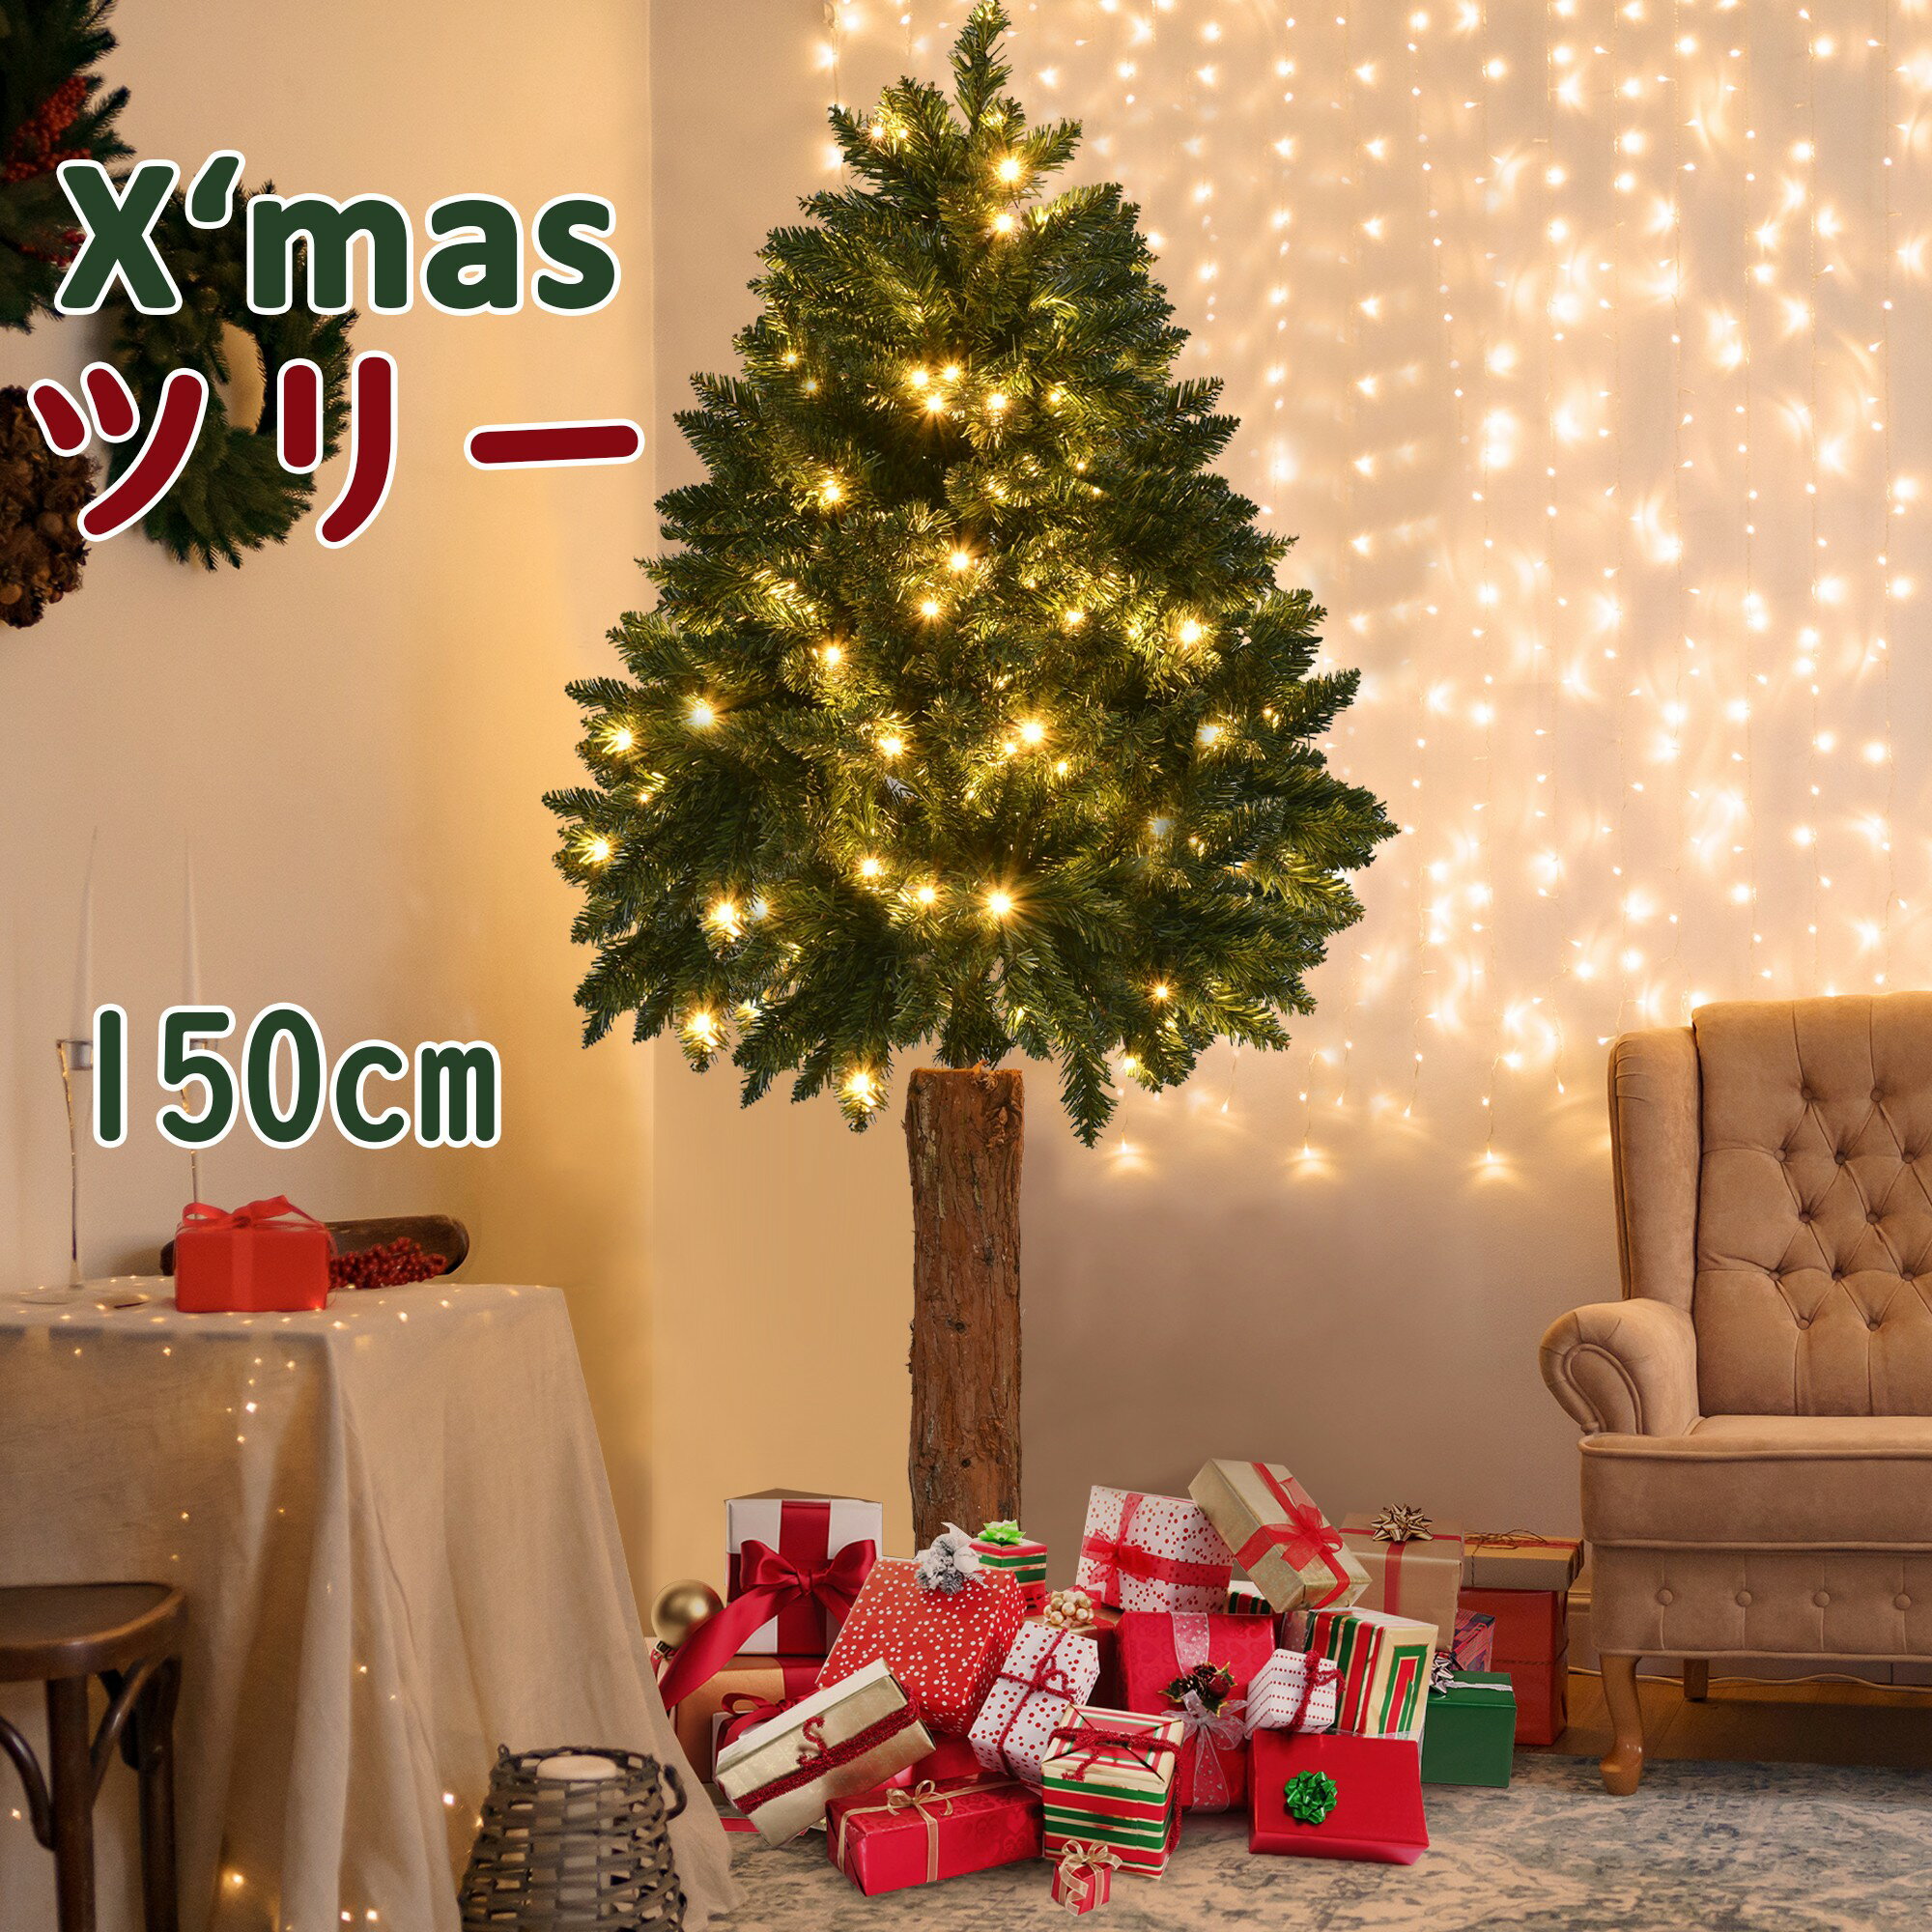 クリスマスツリー 150cm 本物木脚 おしゃれ 北欧 送料無料 クリスマスツリーセット オーナメントセット LEDイルミネーションライト LEDロープライト 電飾 ヨーロピアンブルースプルースツリ クリスマス木 Instagram 人気 北欧 北欧風 高級 イルミネーション